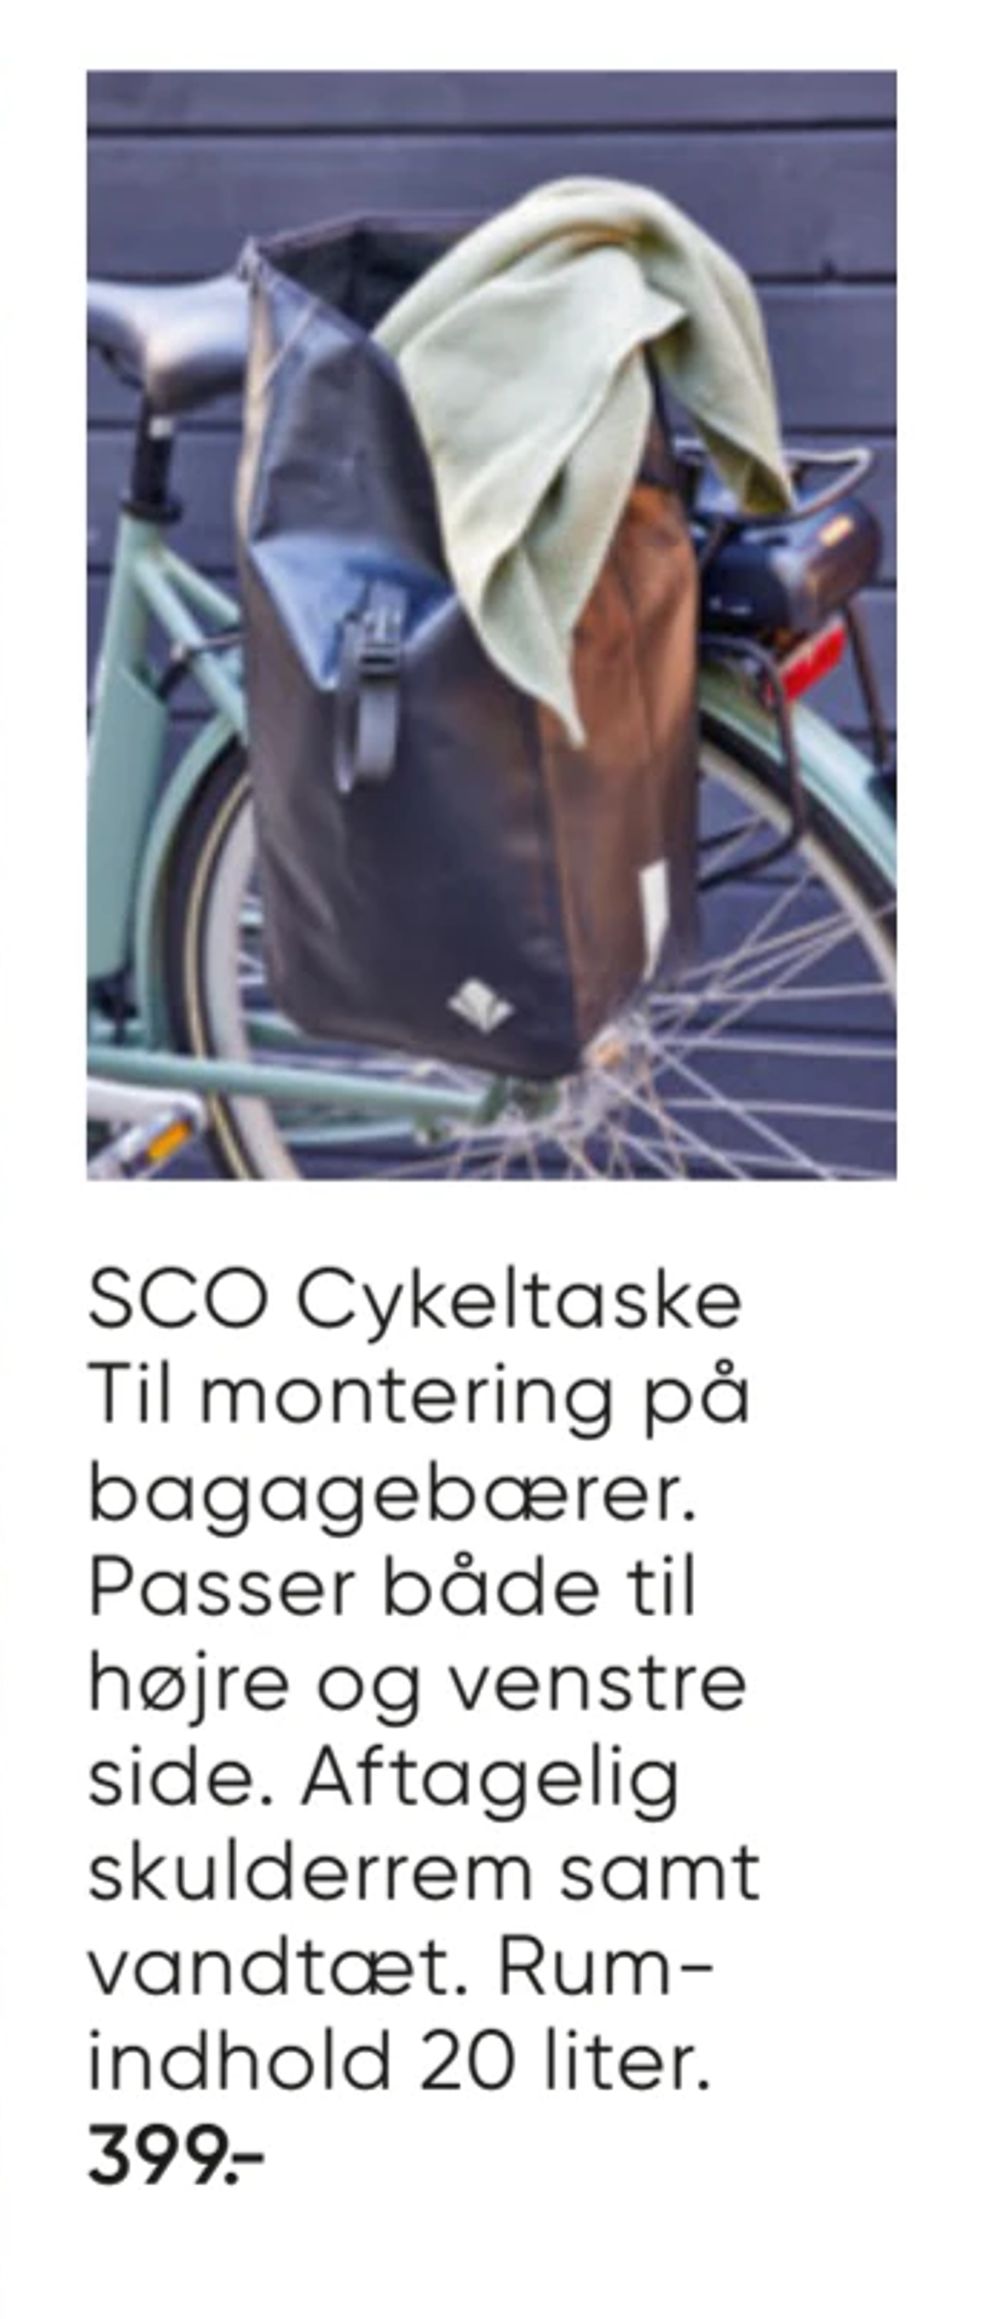 Tilbud på SCO Cykeltaske fra Bilka til 399 kr.